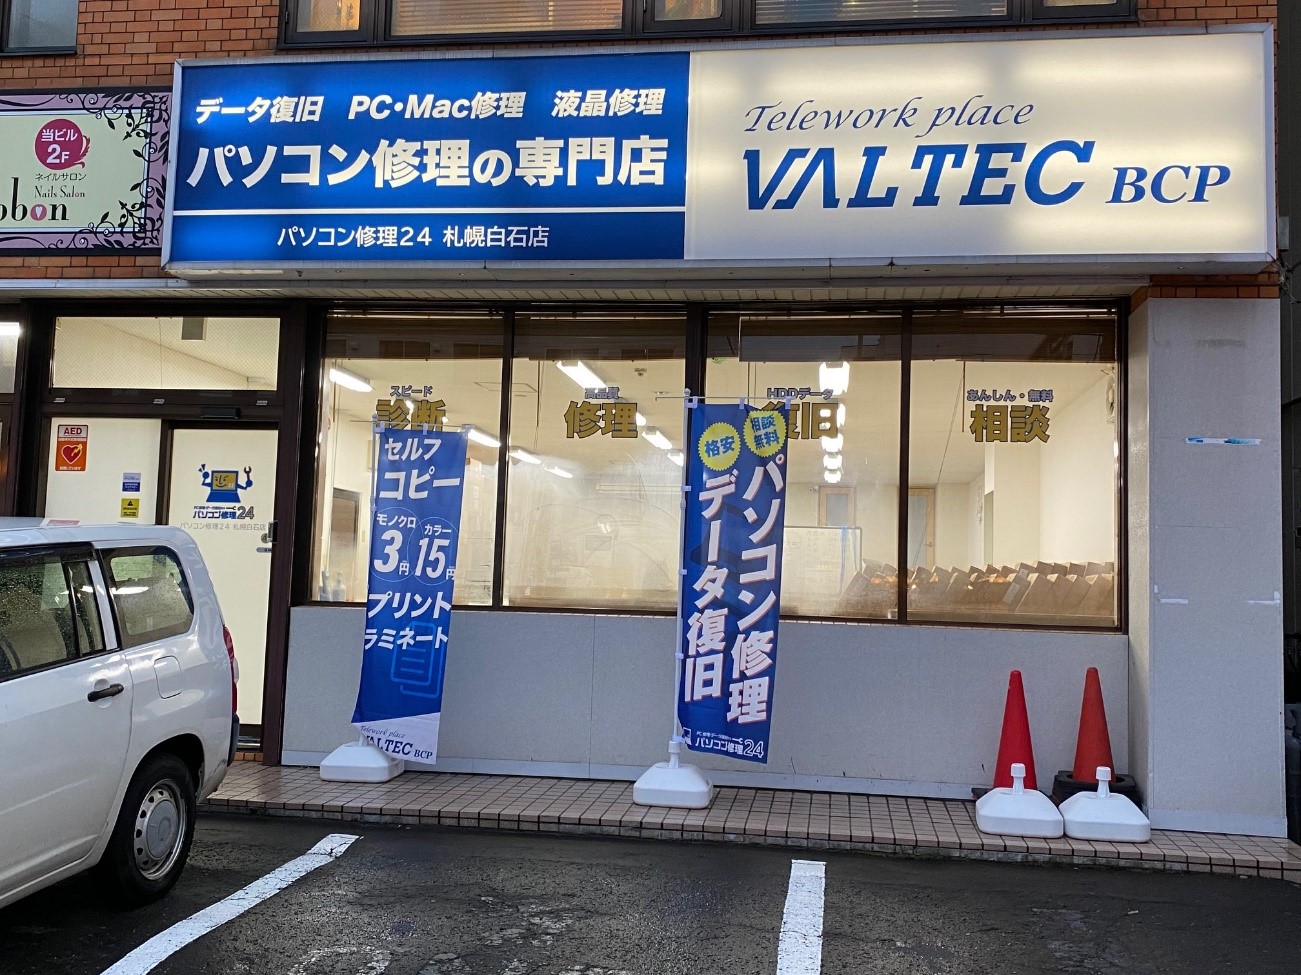 VALTEC BCP 札幌白石店